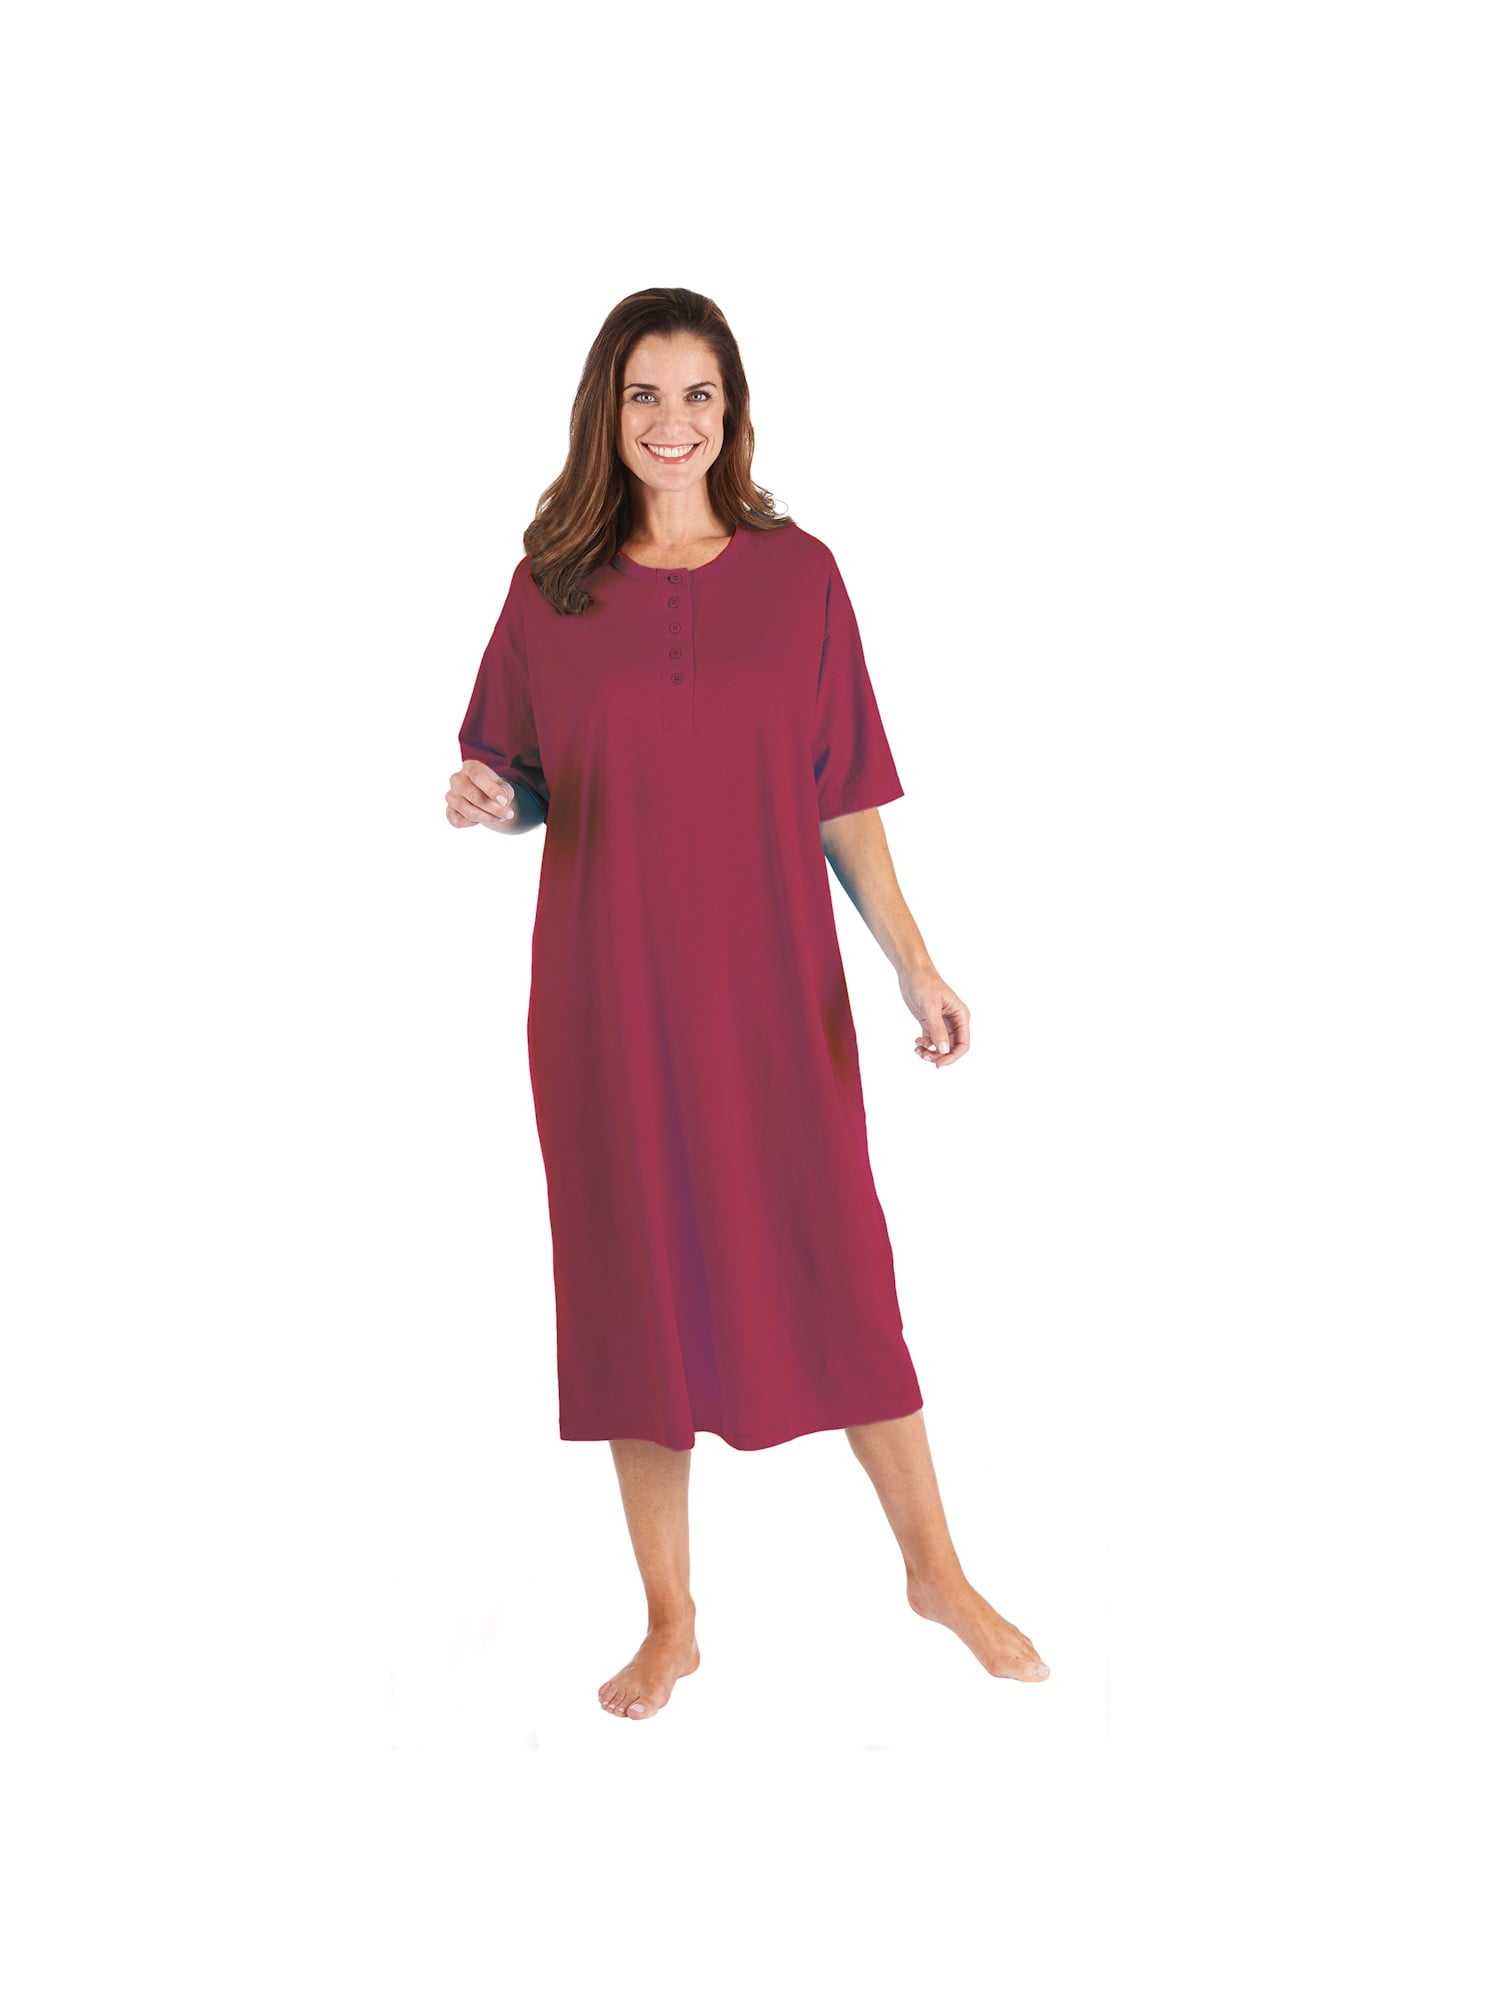 7 VEILS Men’s Nightshirt Nightwear Comfy Big & Tall Short Sleeve Henley Sleep Shirt Tops Nightgown 